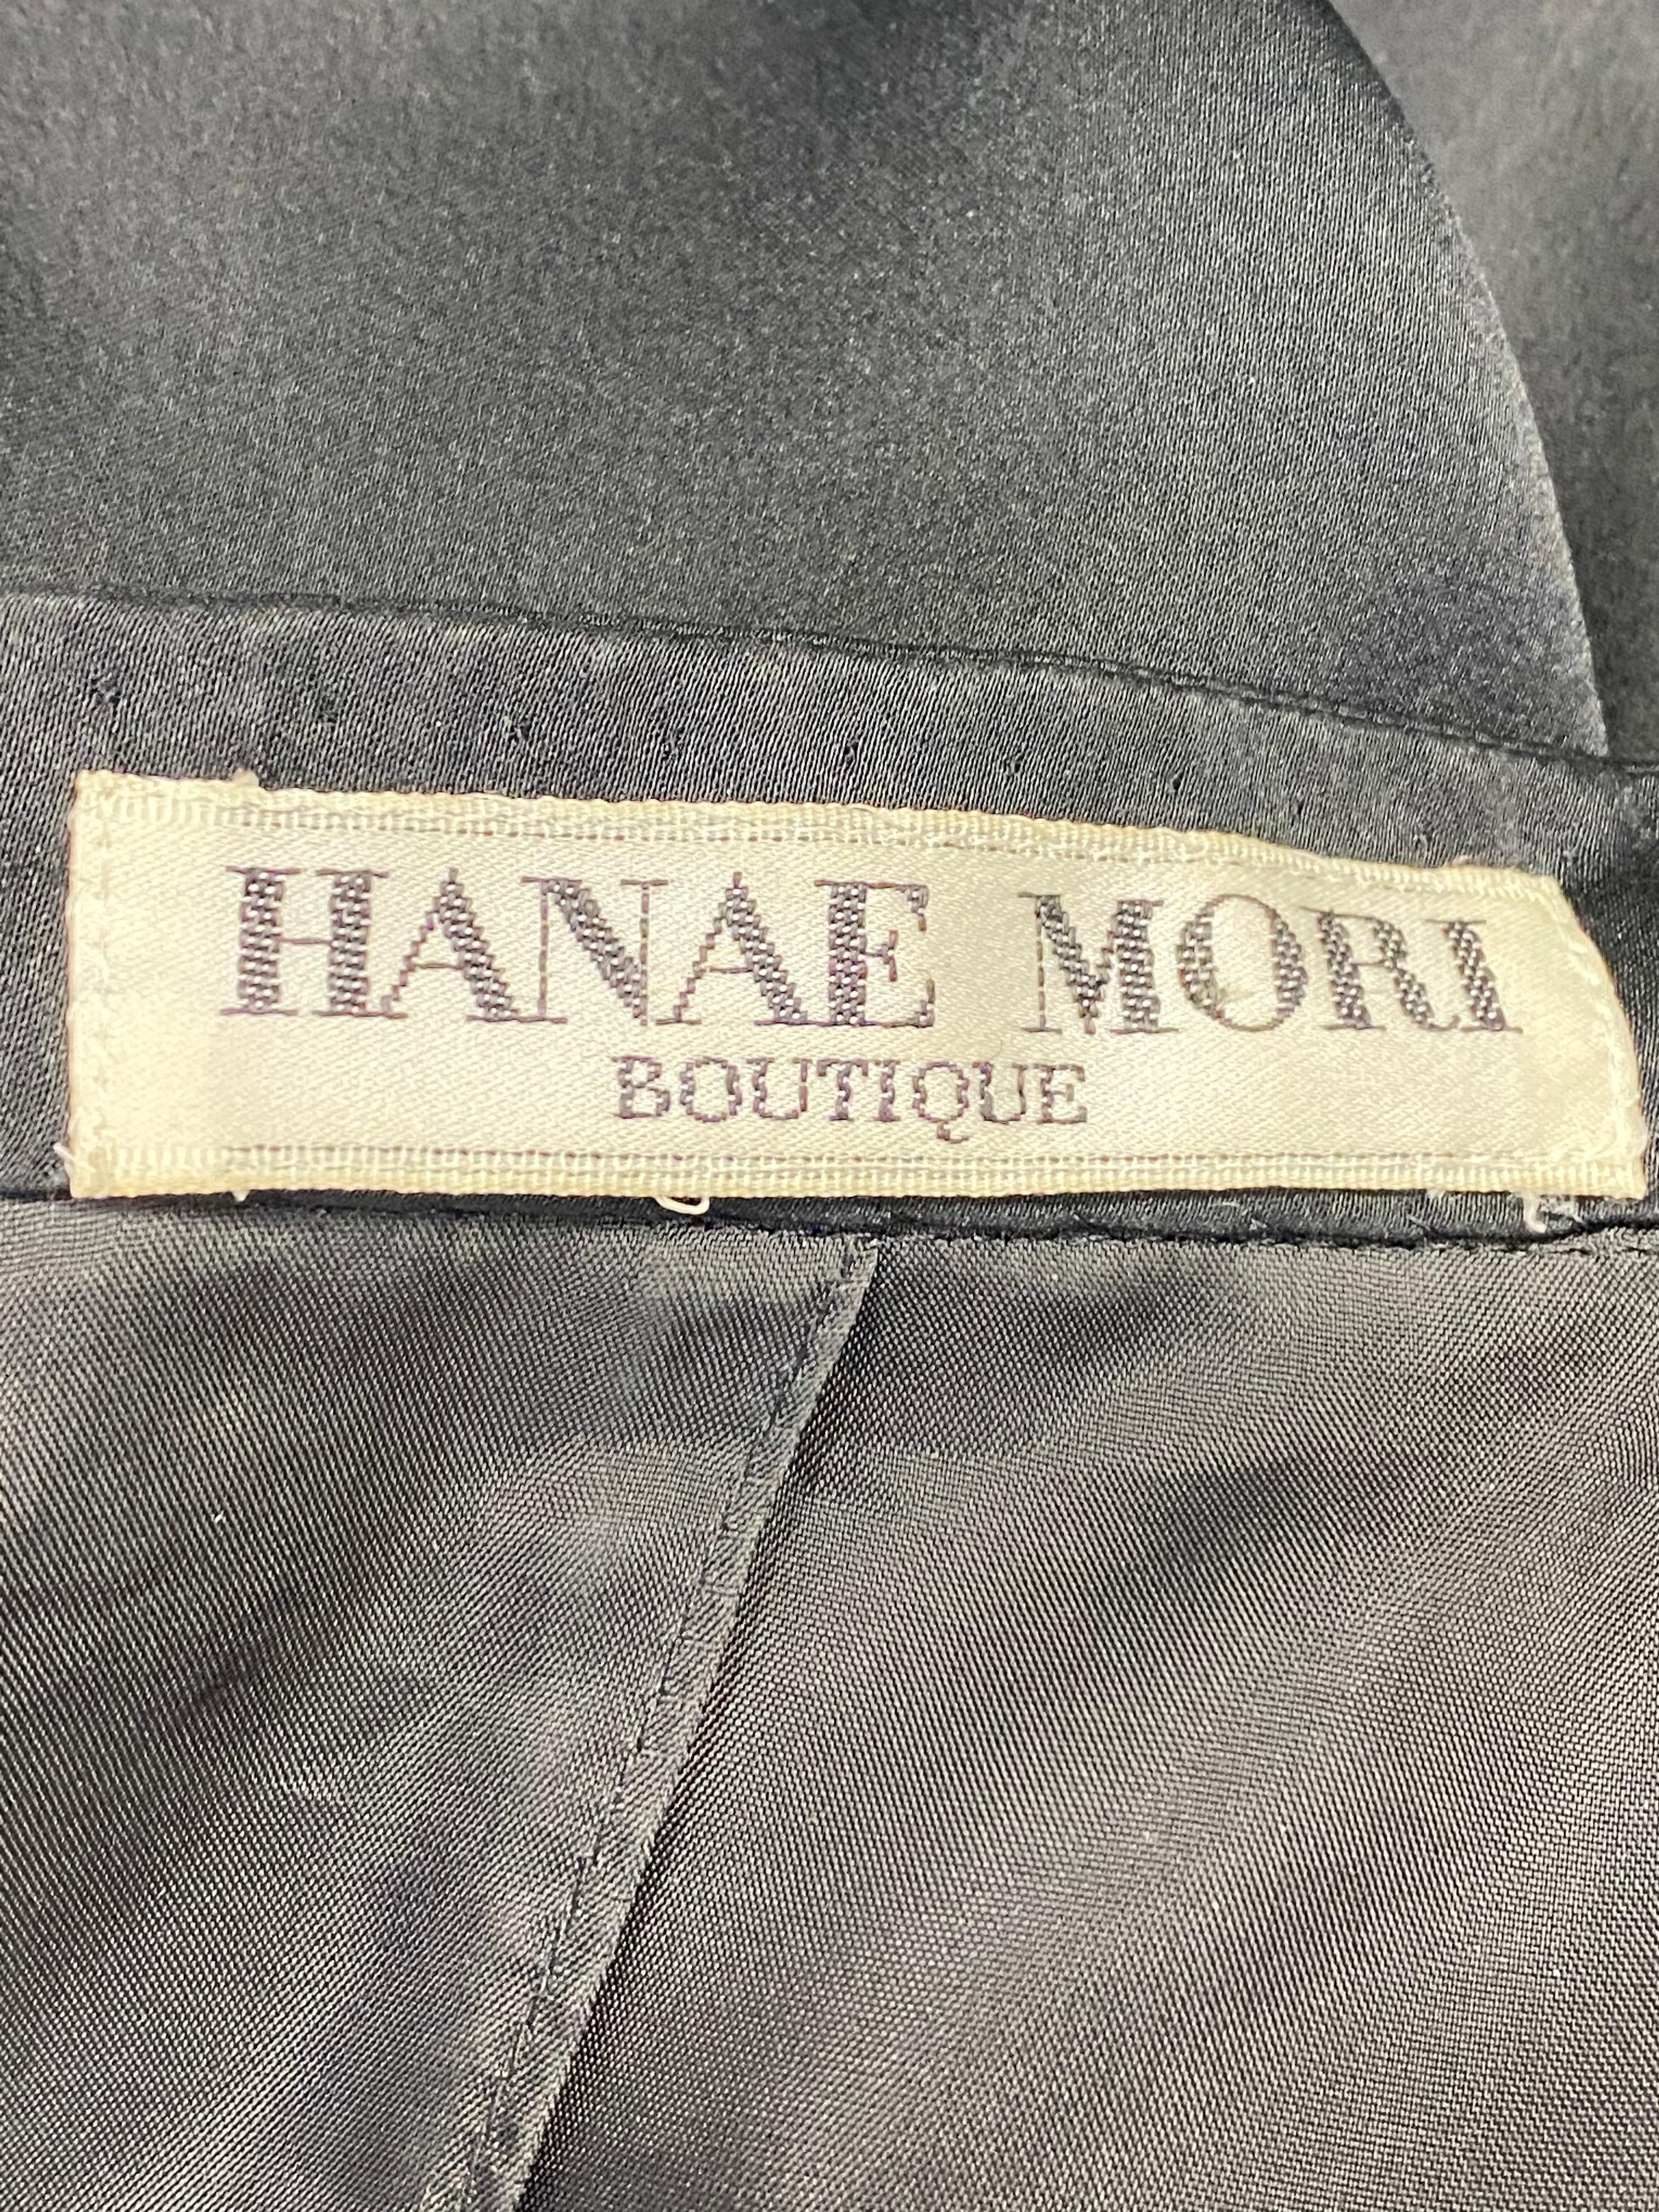 Hanae Mori Boutique Black Silk Blazer Jacket, Size Small For Sale 3